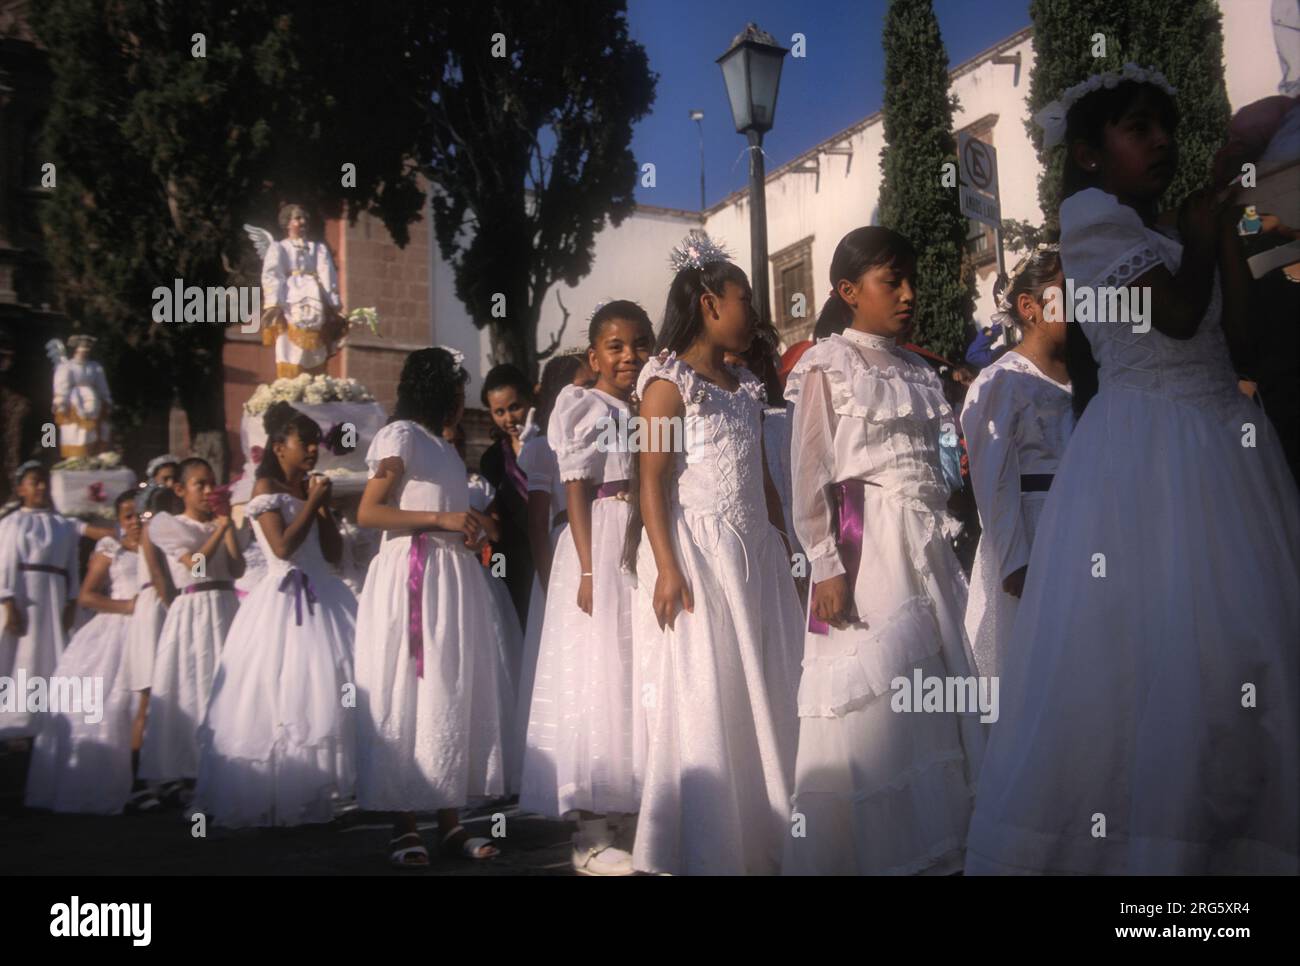 Giovani ragazze vestite di bianco durante la processione religiosa, Semana Santa, San Miguel de Allende, Messico Foto Stock